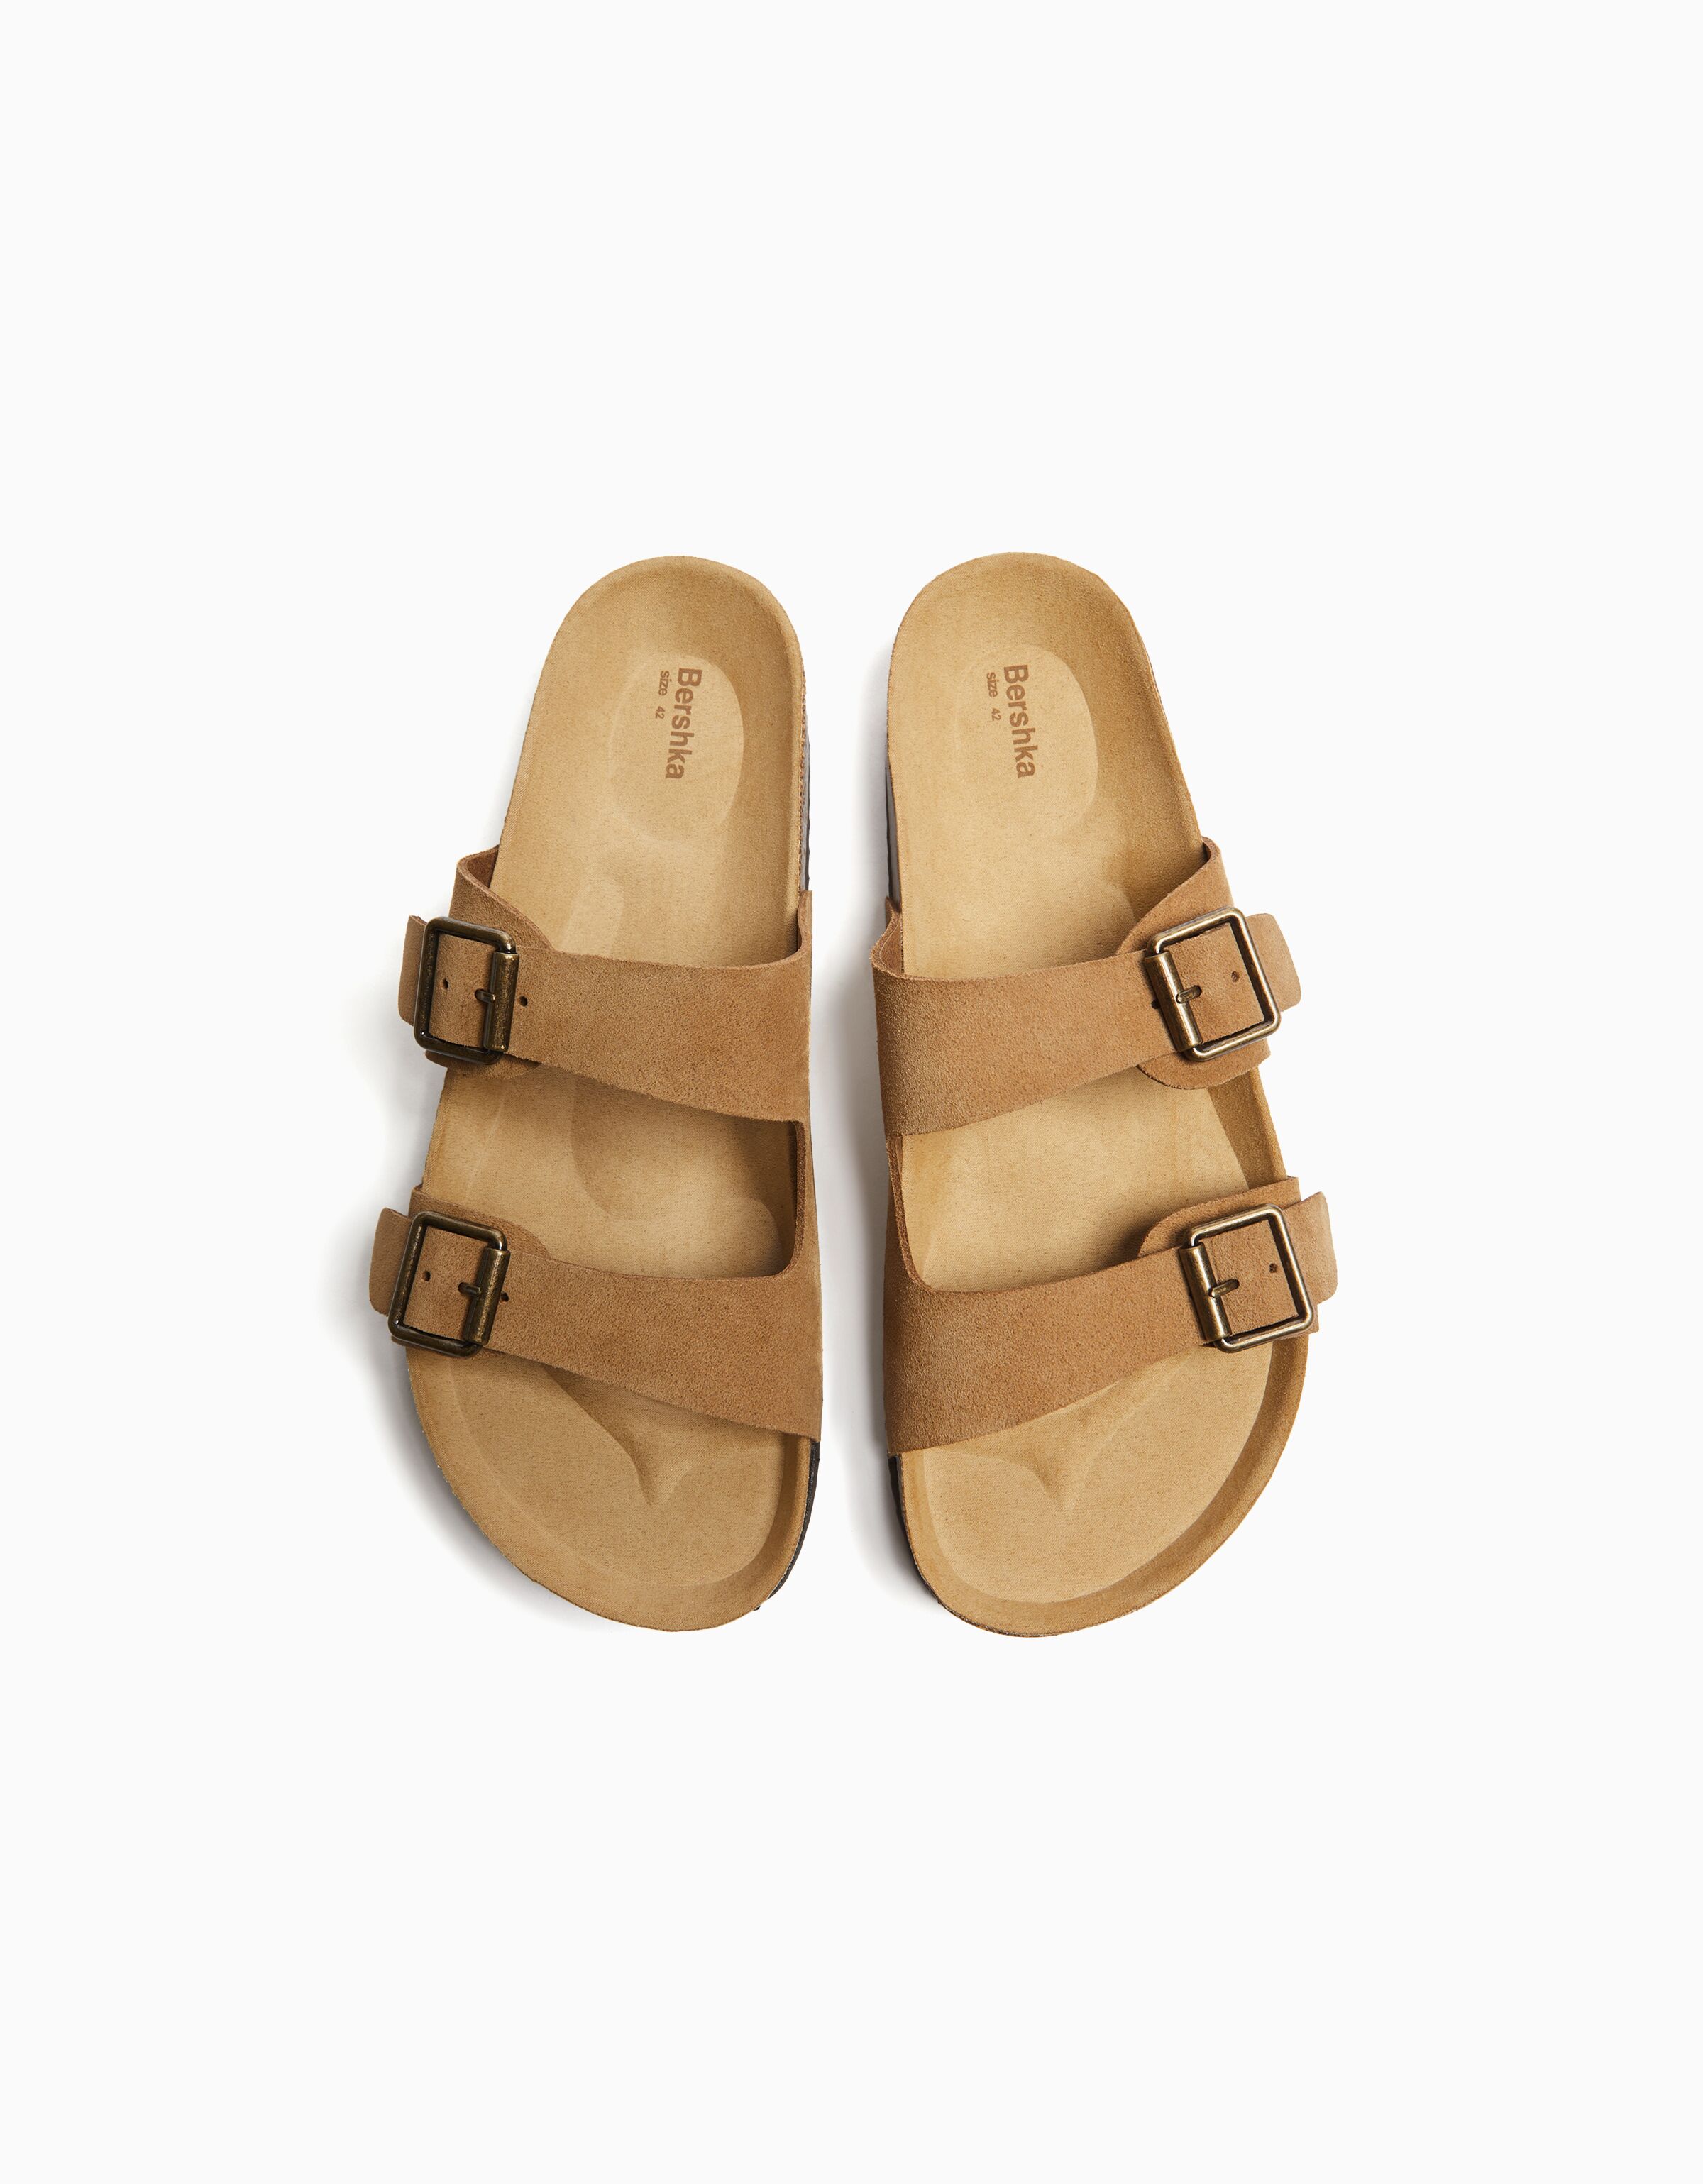 Men’s LEATHER sandals with buckles - Women | Bershka